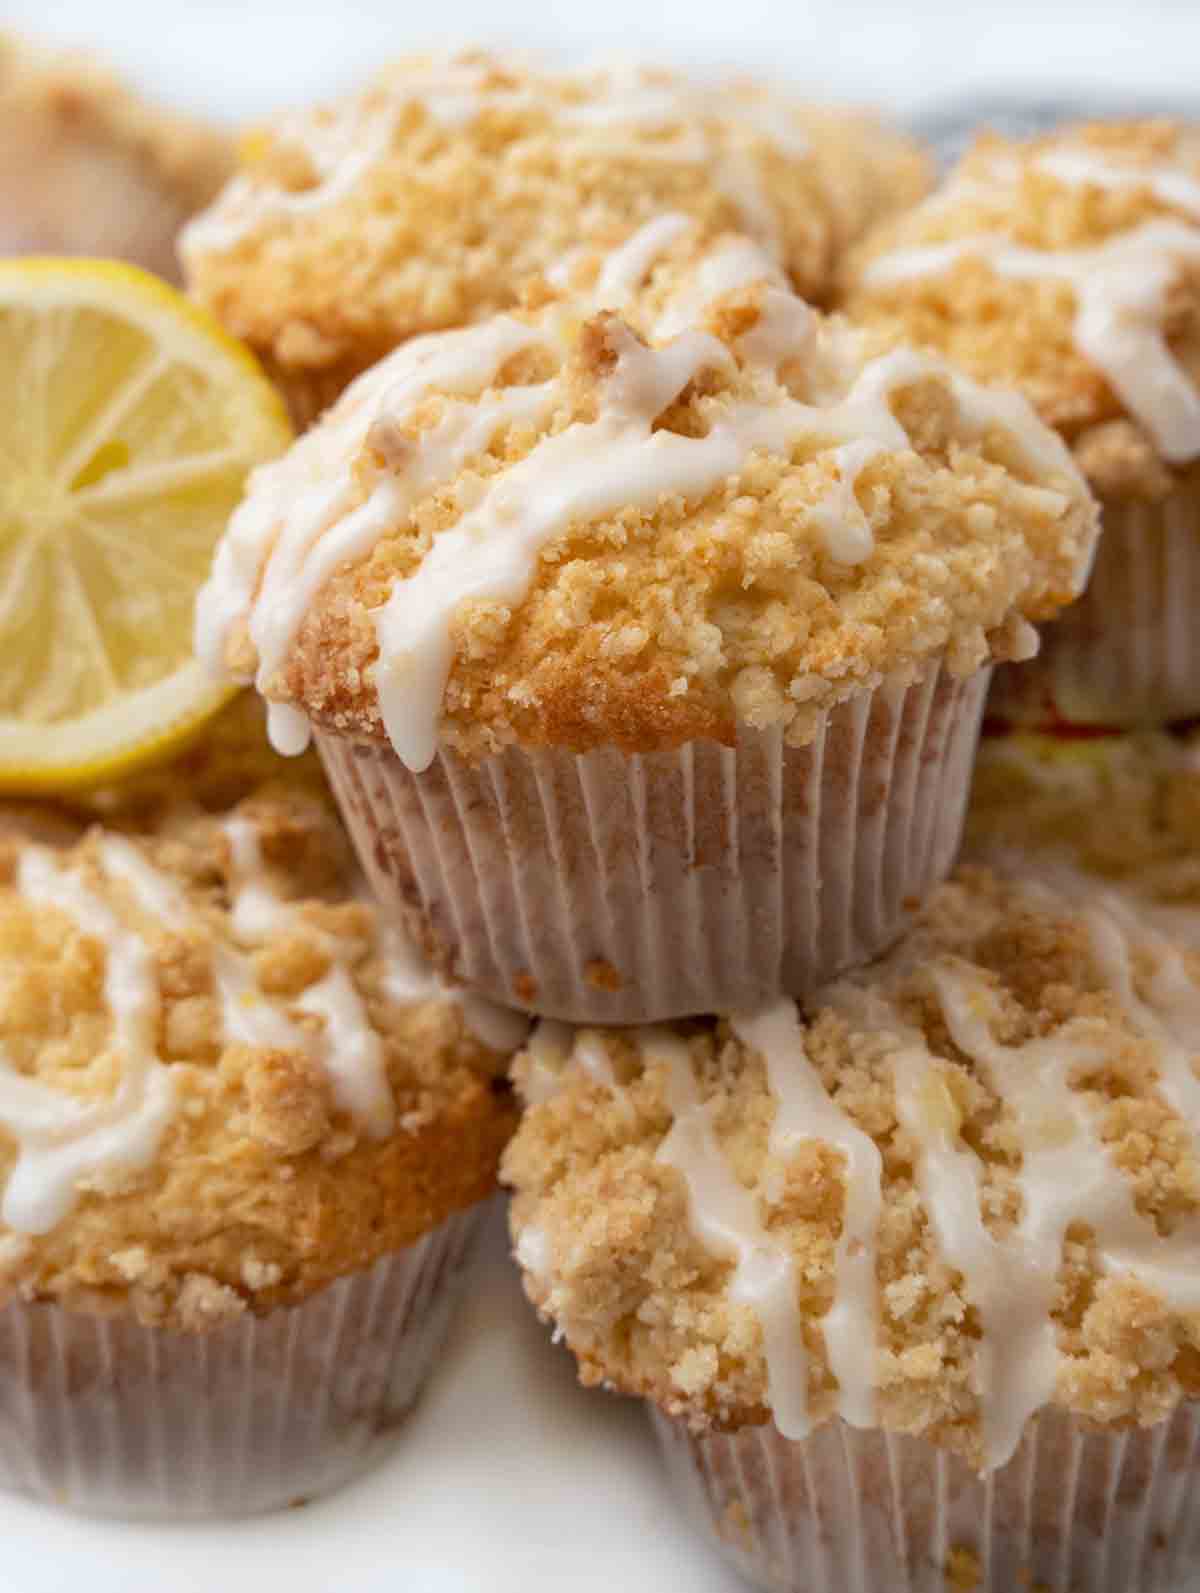 Lemon streusel muffins with half a lemon on white platter.